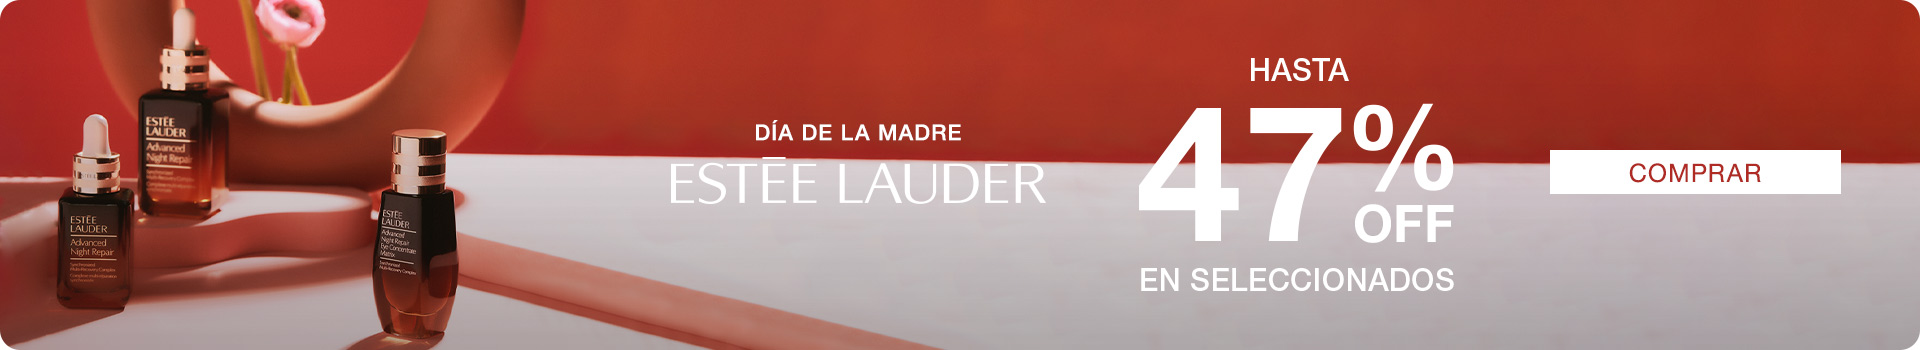 Estee Lauder hasta 40%OFF + 6 cuotas sin interés